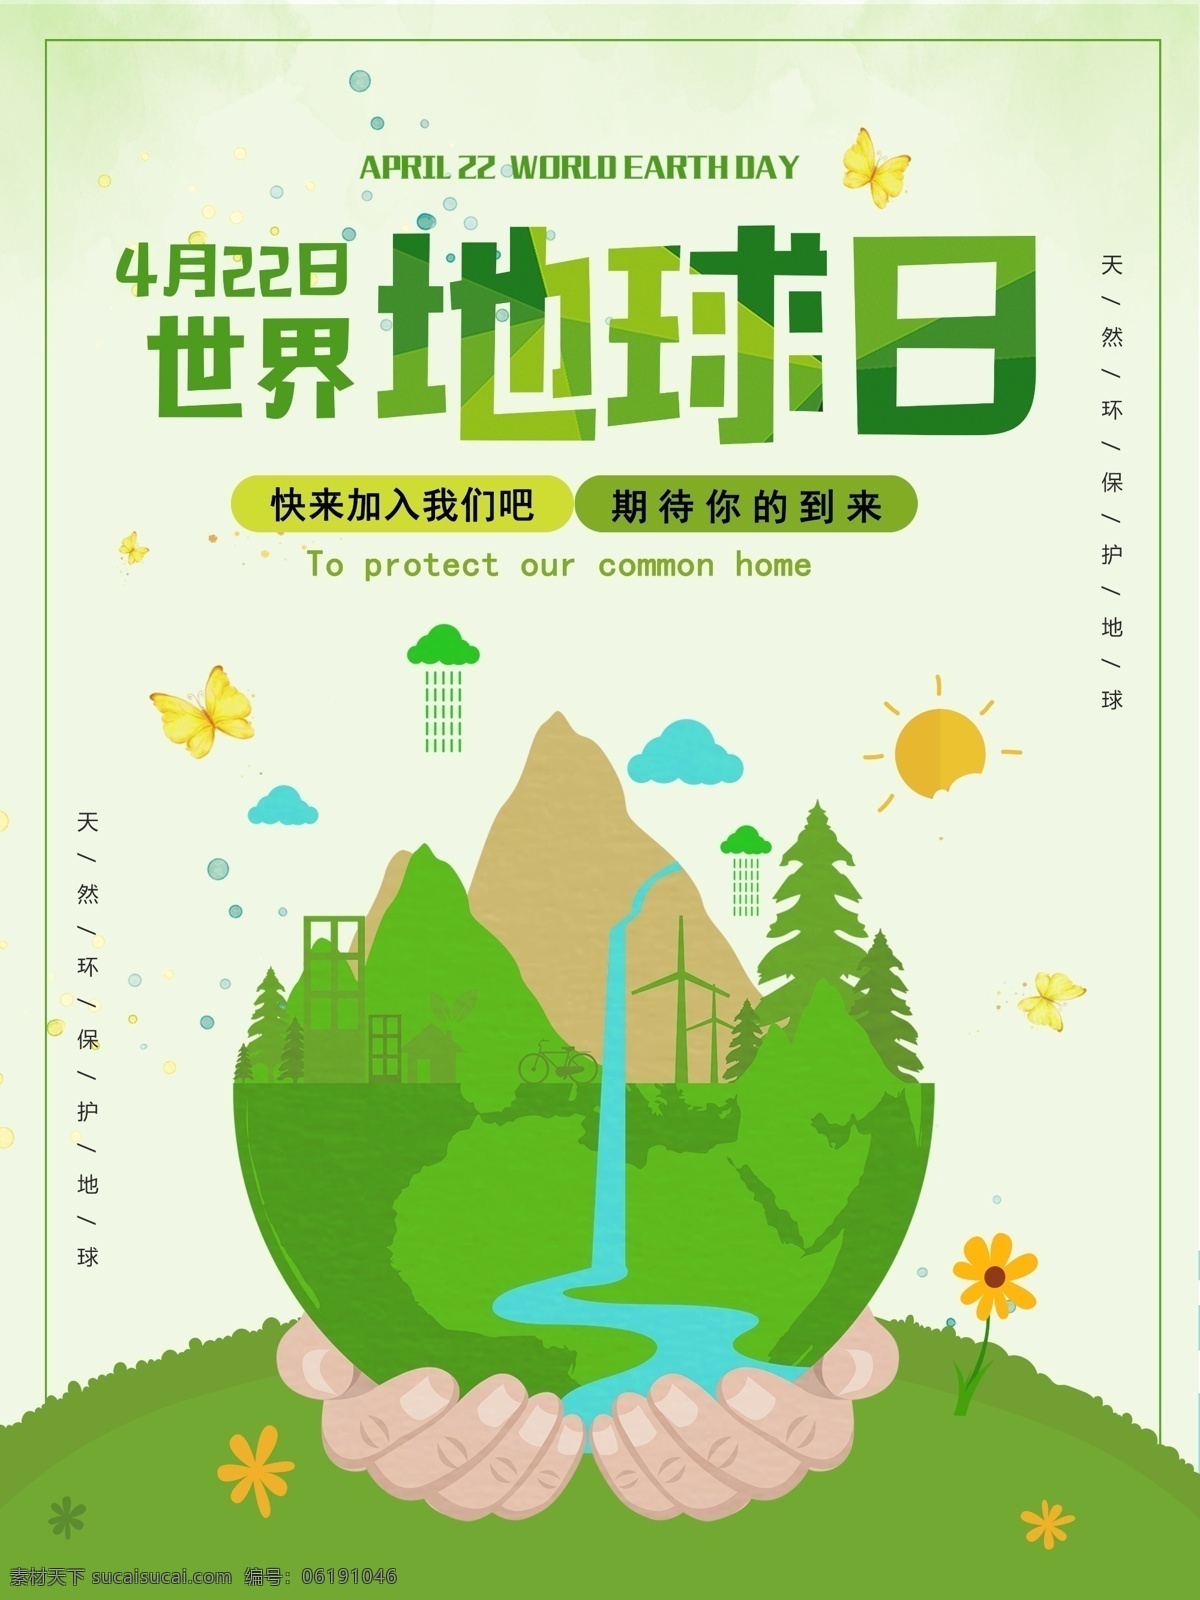 绿色 世界 地球日 环保 公益 海报 公益海报 简约 地球 保护环境 节能 低碳 环保日 保护环境海报 世界地球日